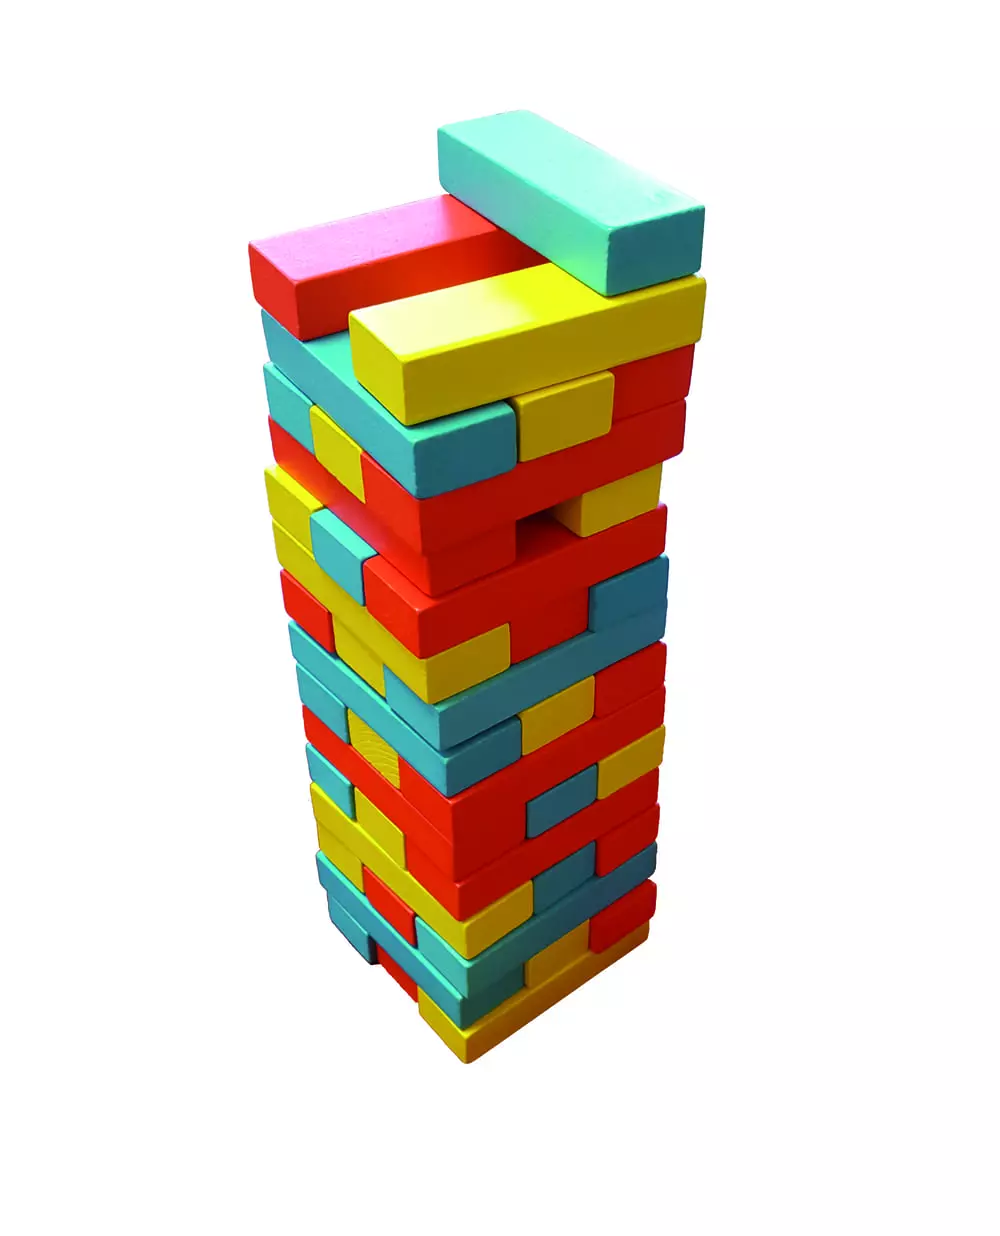 Kolorowa wieża - gra zręcznościowa